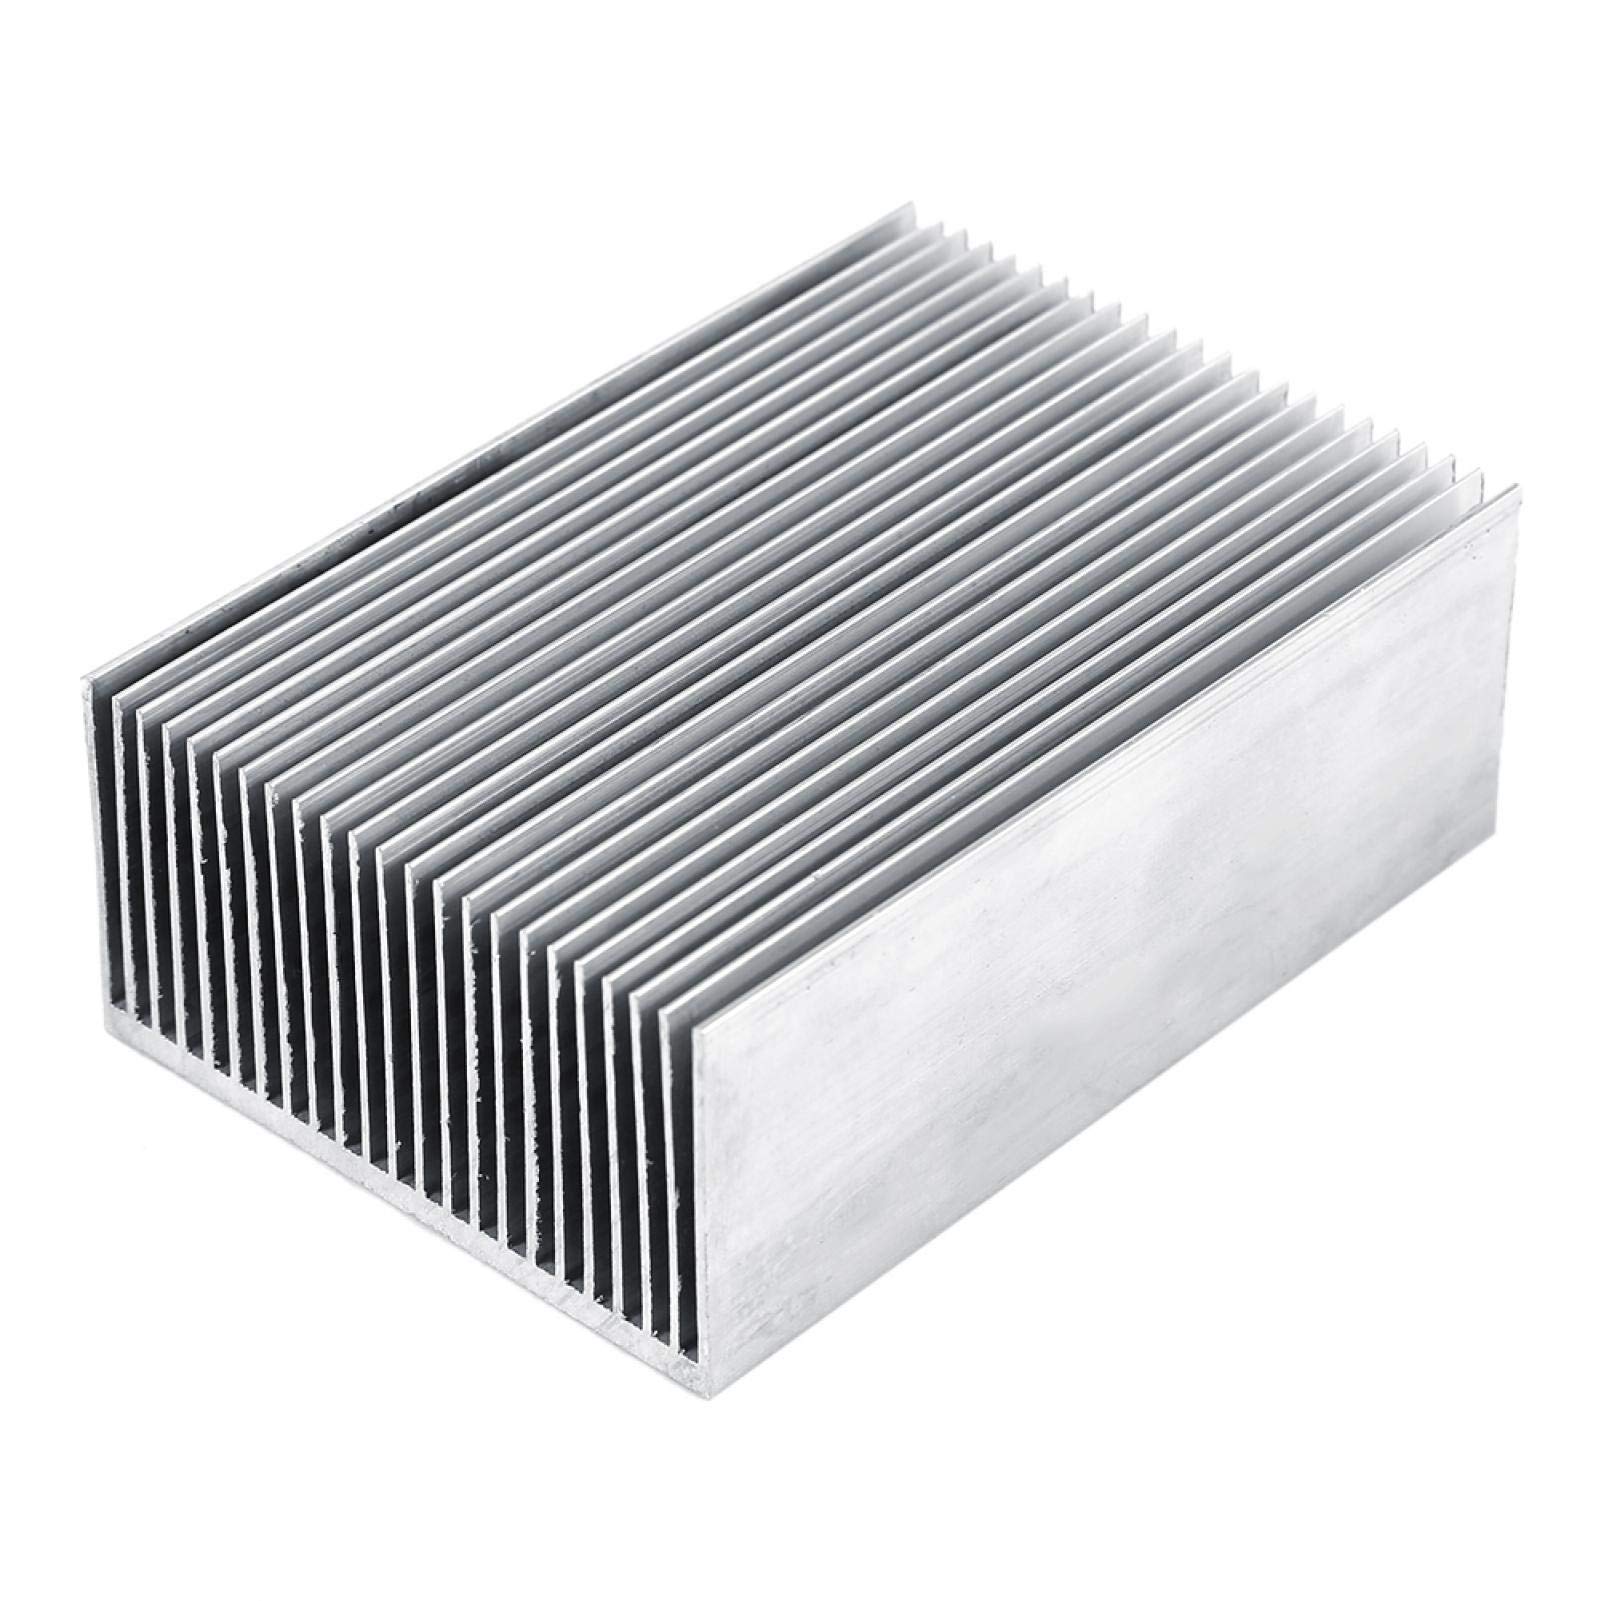 Kühlkörper, Weojeviy Kühlrippen mit Lüfter, Aluminium-Kühlkörper-Kühlkörper-Modul-Kühlrippe für Hochleistungs-LED-Verstärker-Transistor-Halbleitergeräte mit 100 Mm (L) X 69 Mm (B) X 36 Mm (H) von Weojeviy